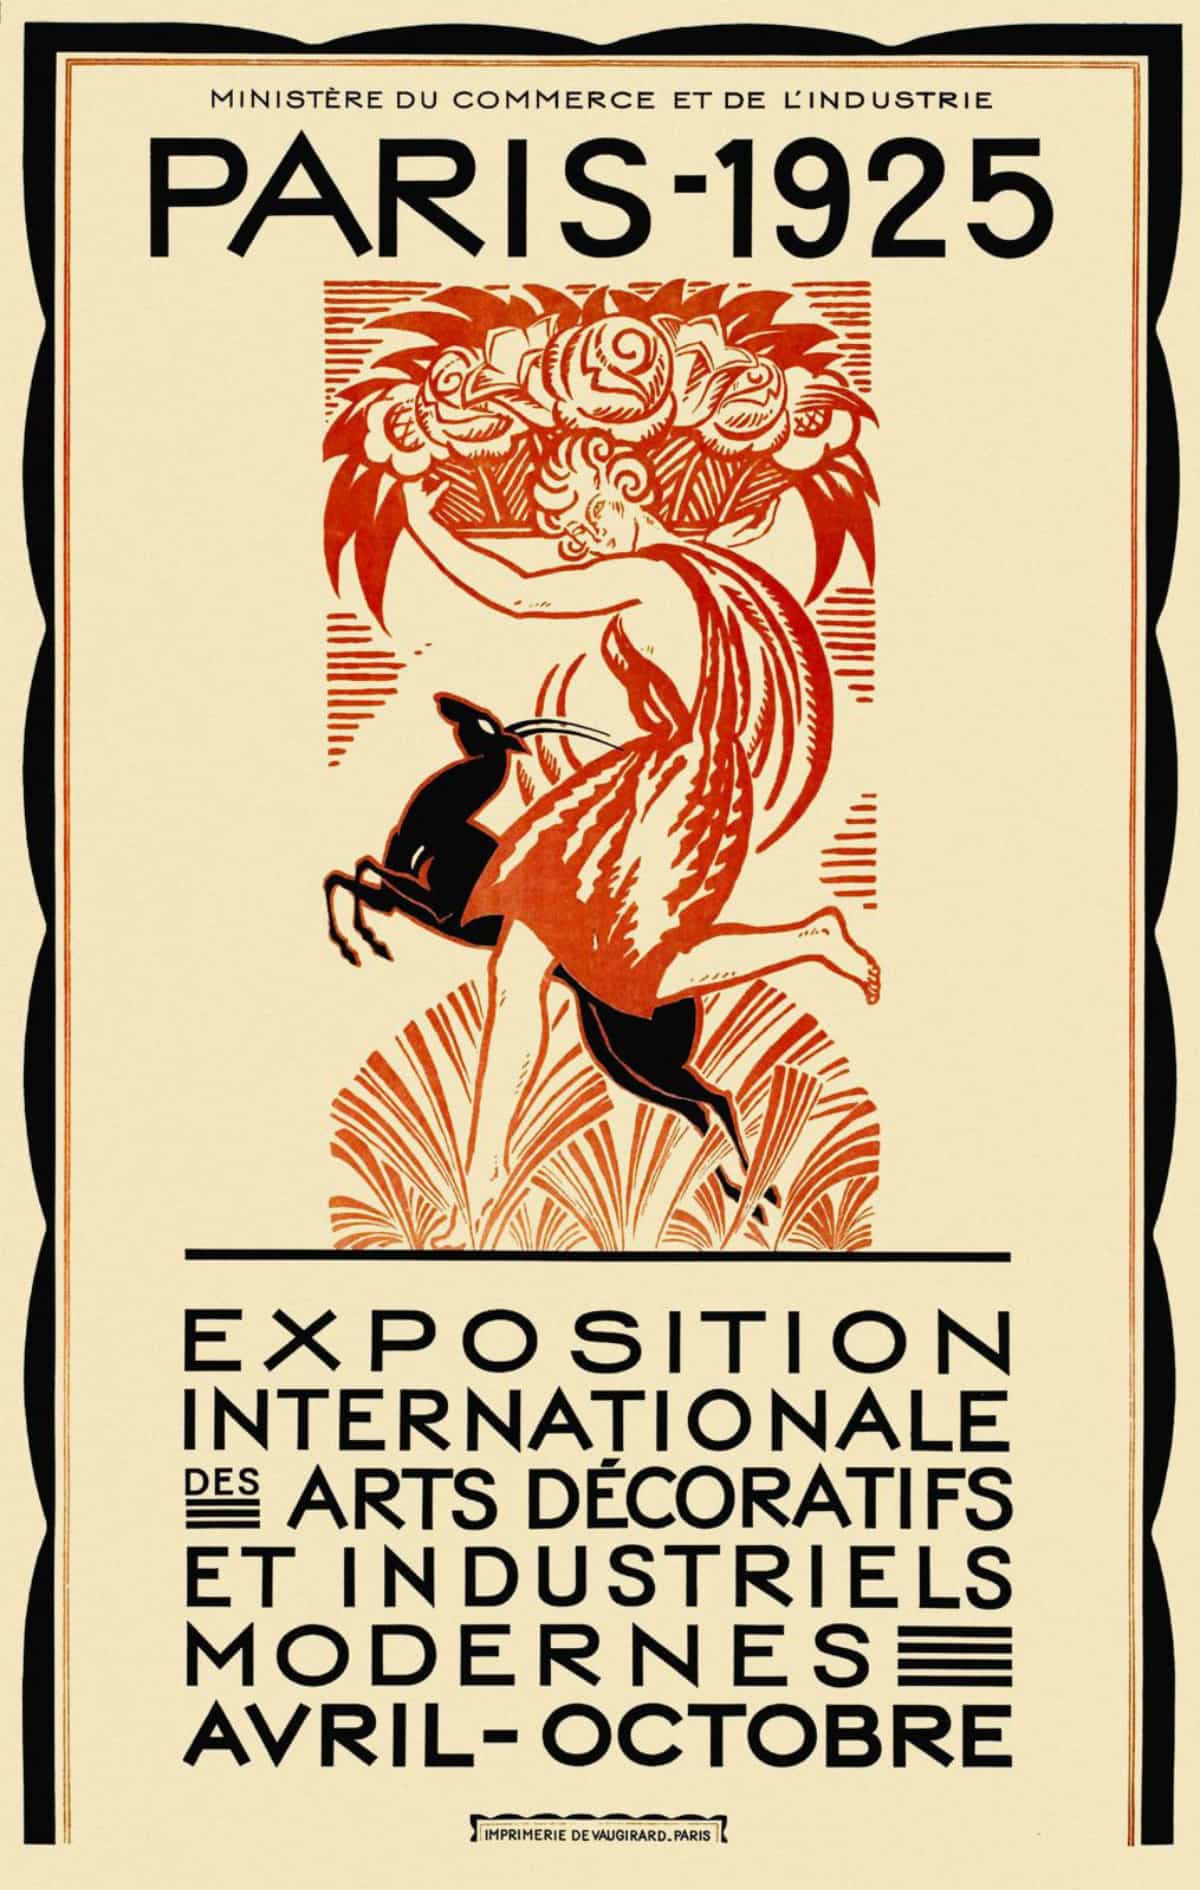 1925 Paris Exposition Internationale des Arts Decoratifs et Industriels Modernes